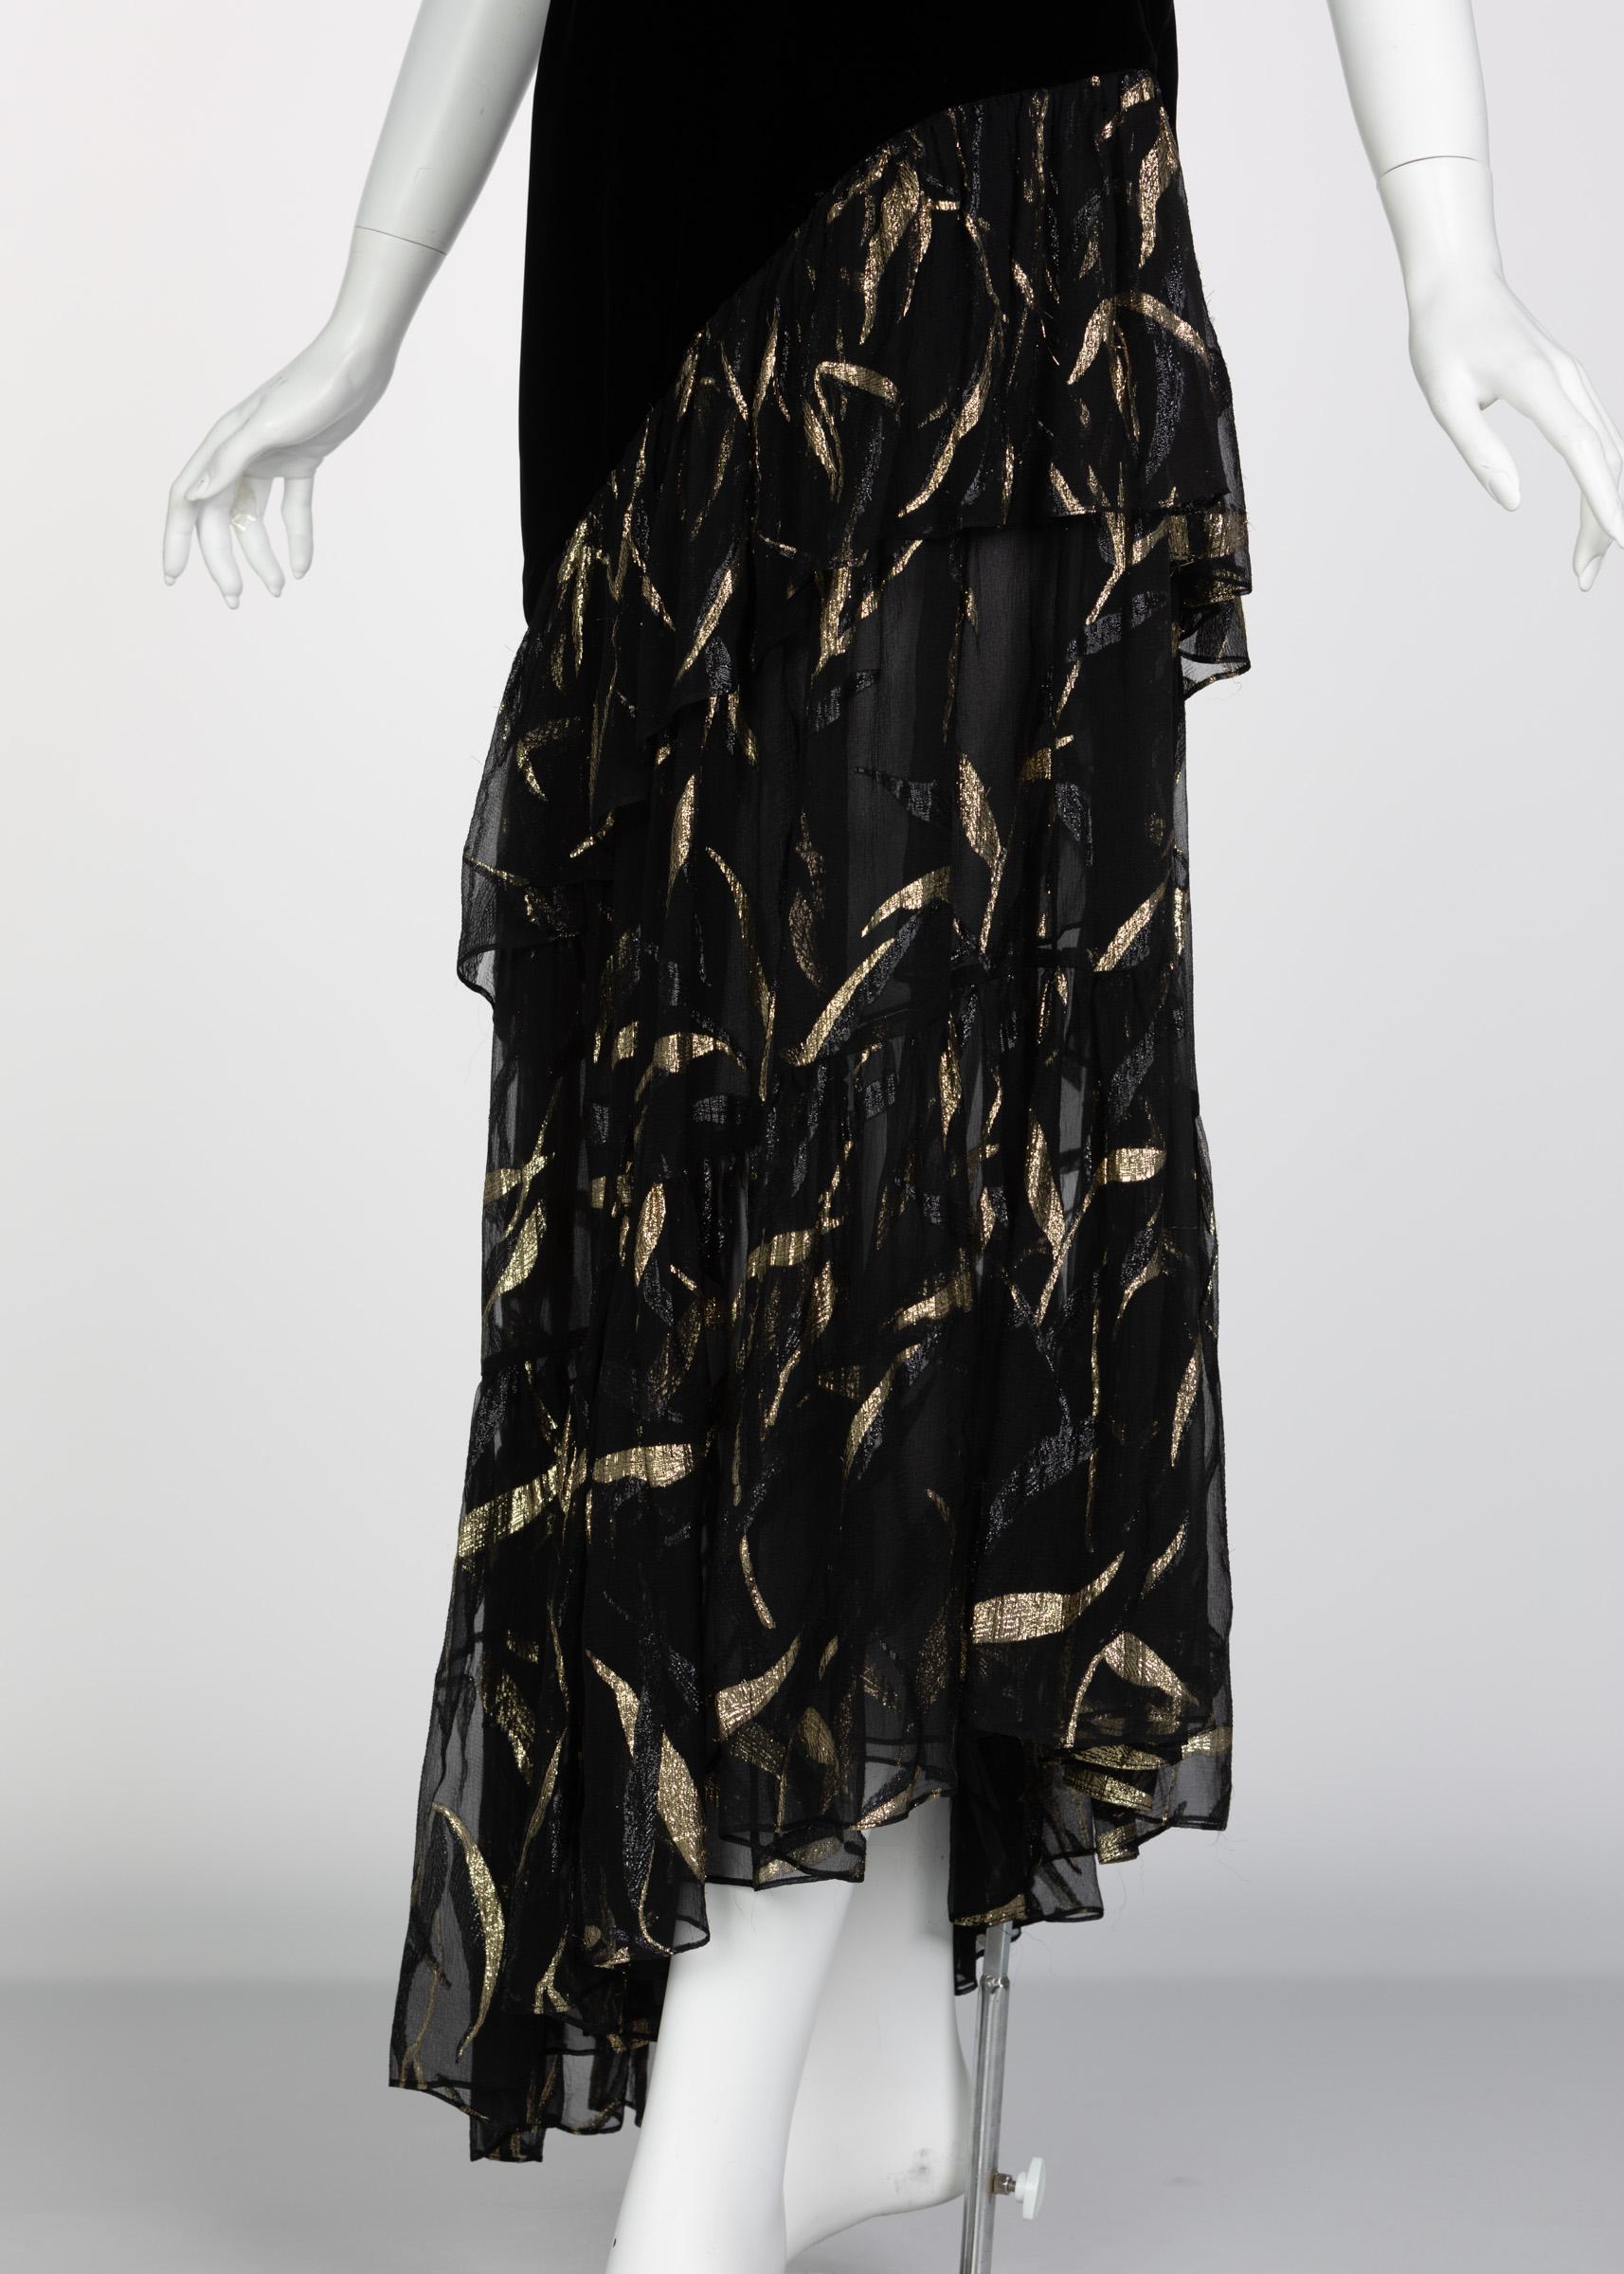 Saint Laurent YSL One shoulder Black Velvet Metallic Layered Dress, 1980s 4